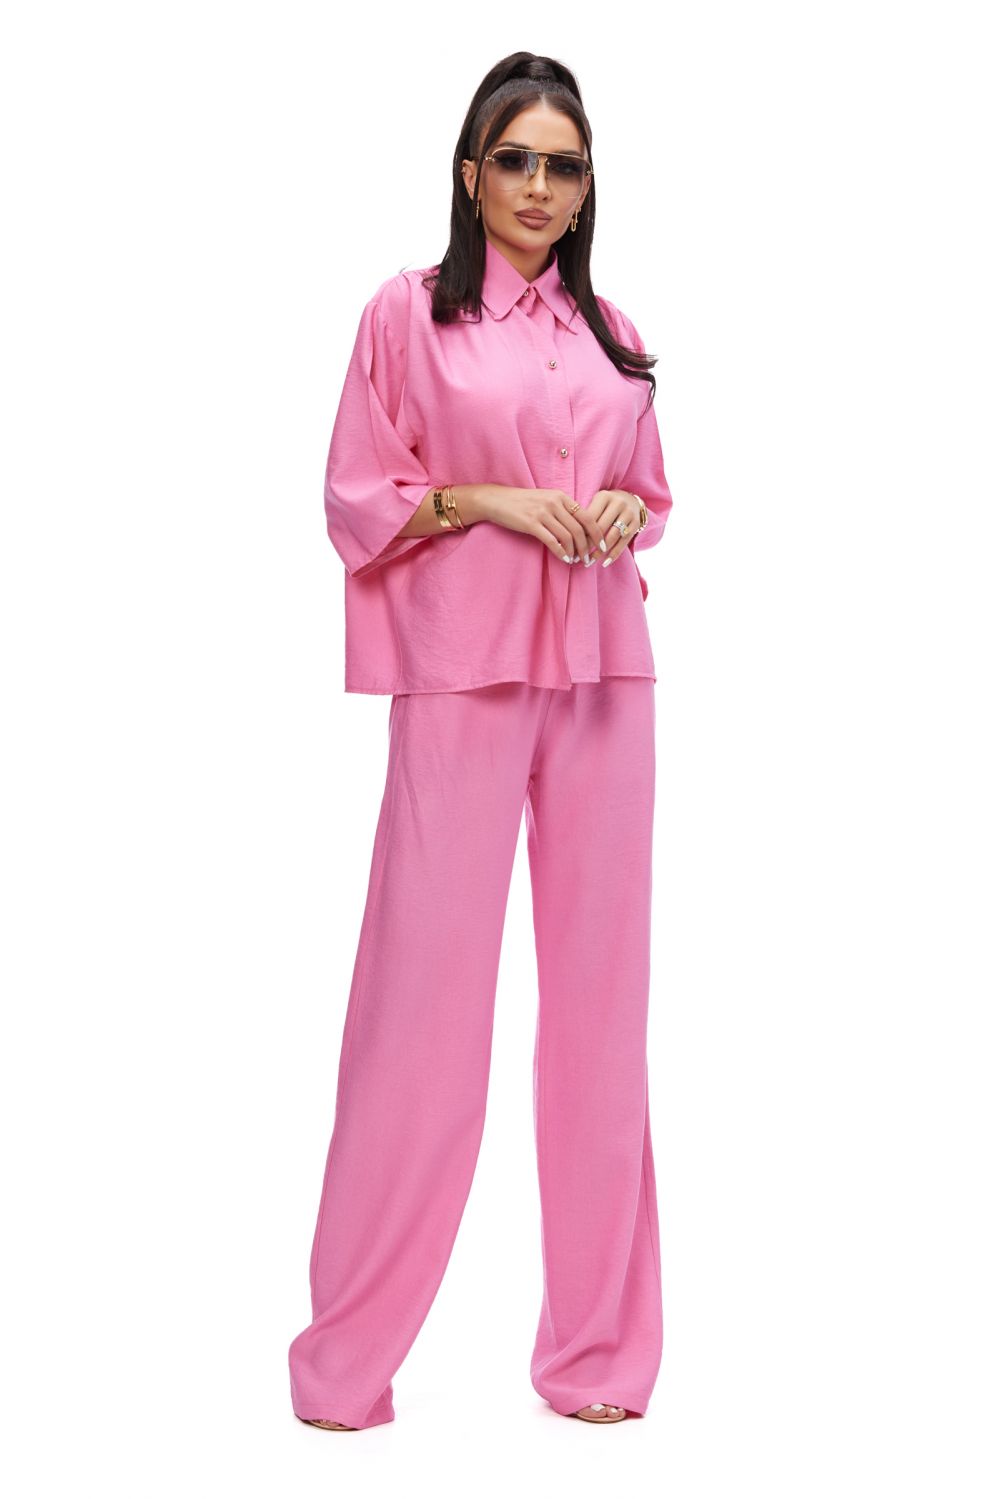 Sineky Bogas pink casual ladies suit